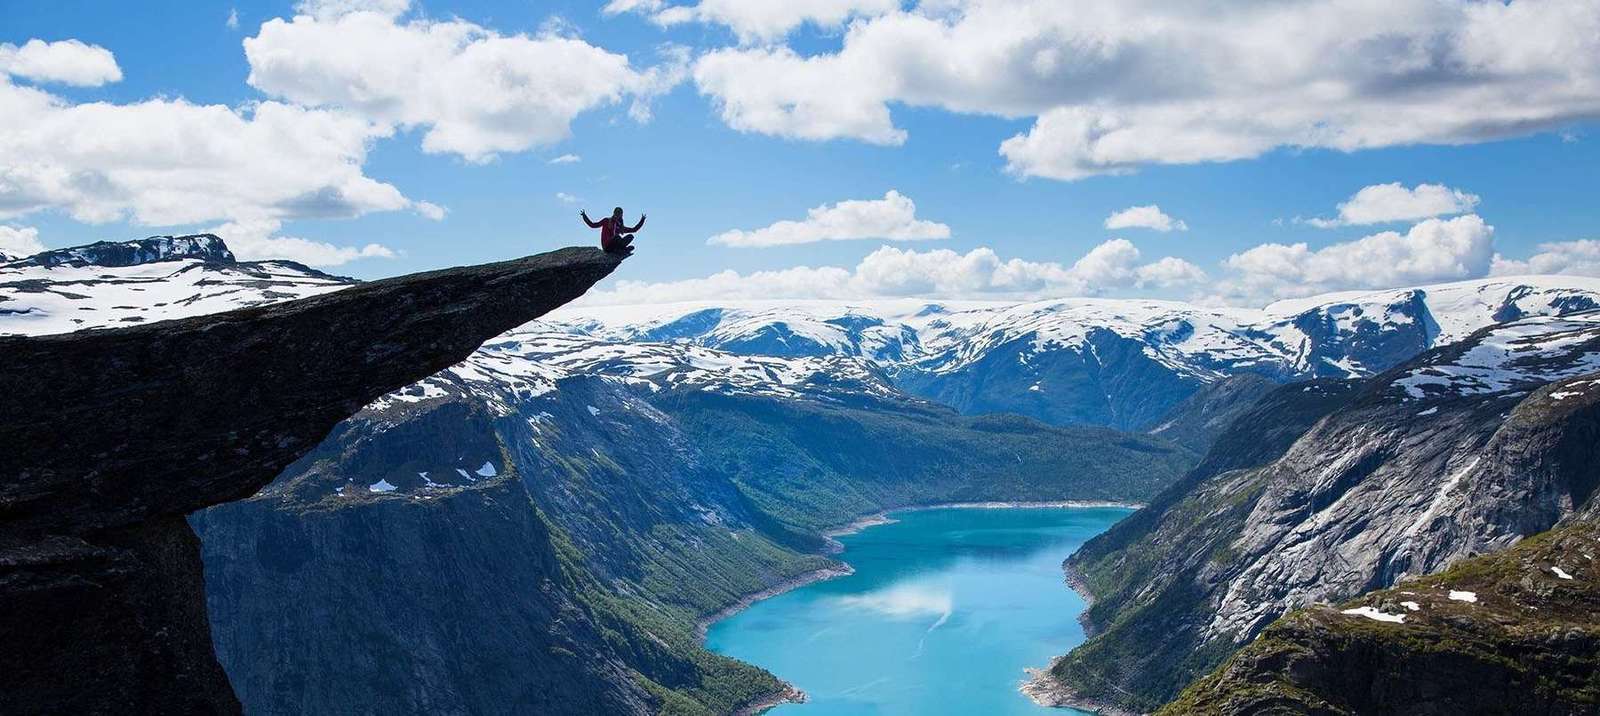 Randonnée Trolltunga, falaise au-dessus du fjord en Norvège :: Conseils et guide
